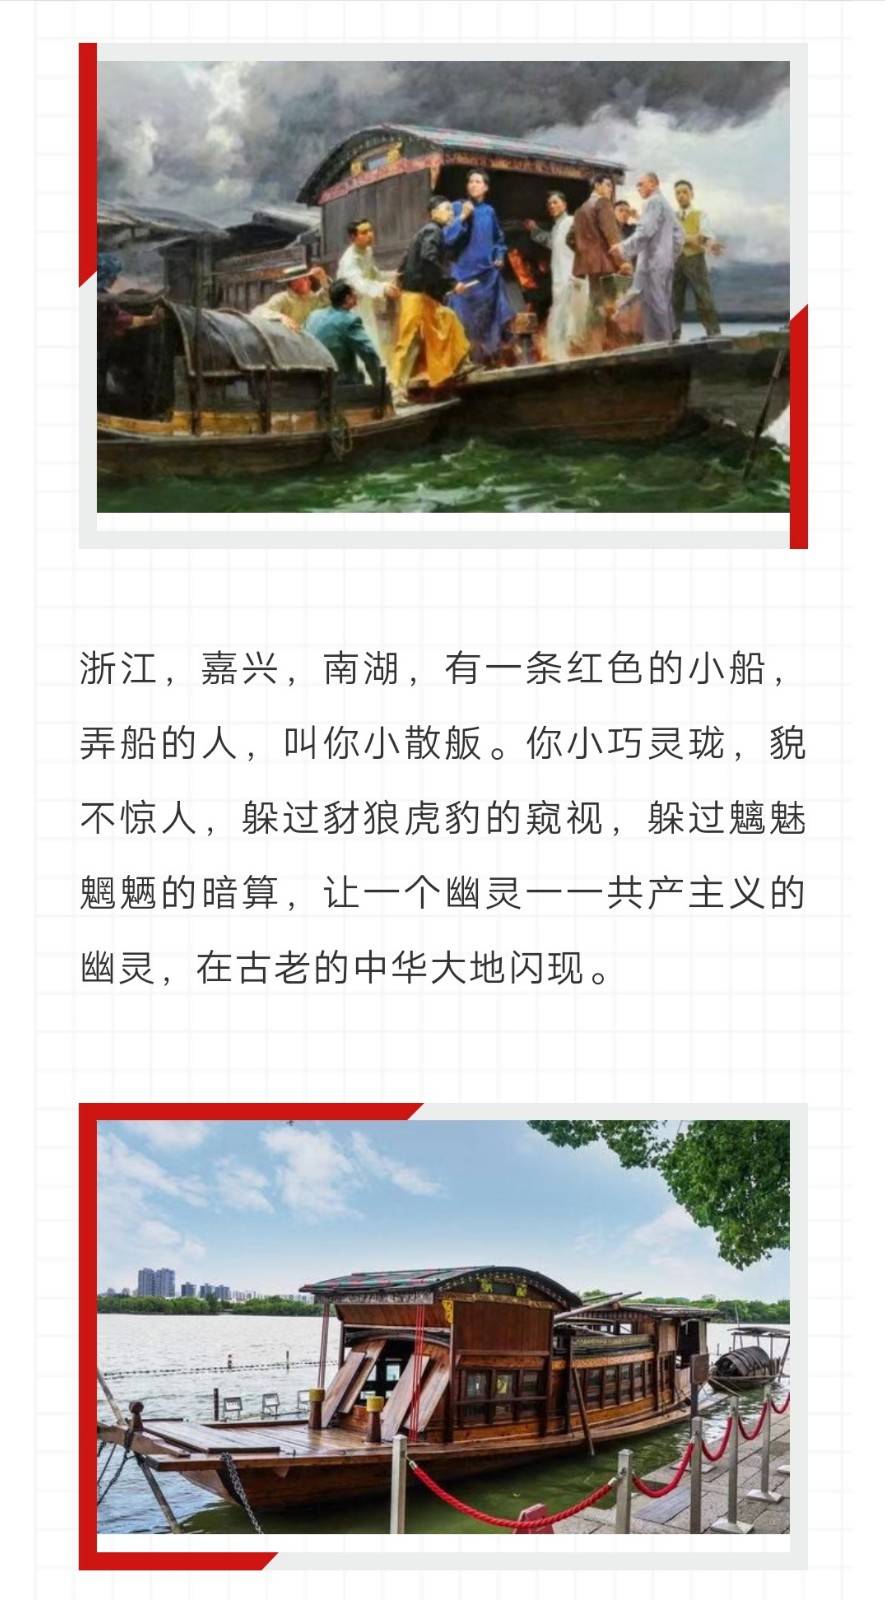 南湖红船 一一写在二零二零年"七一",迎接建党百年